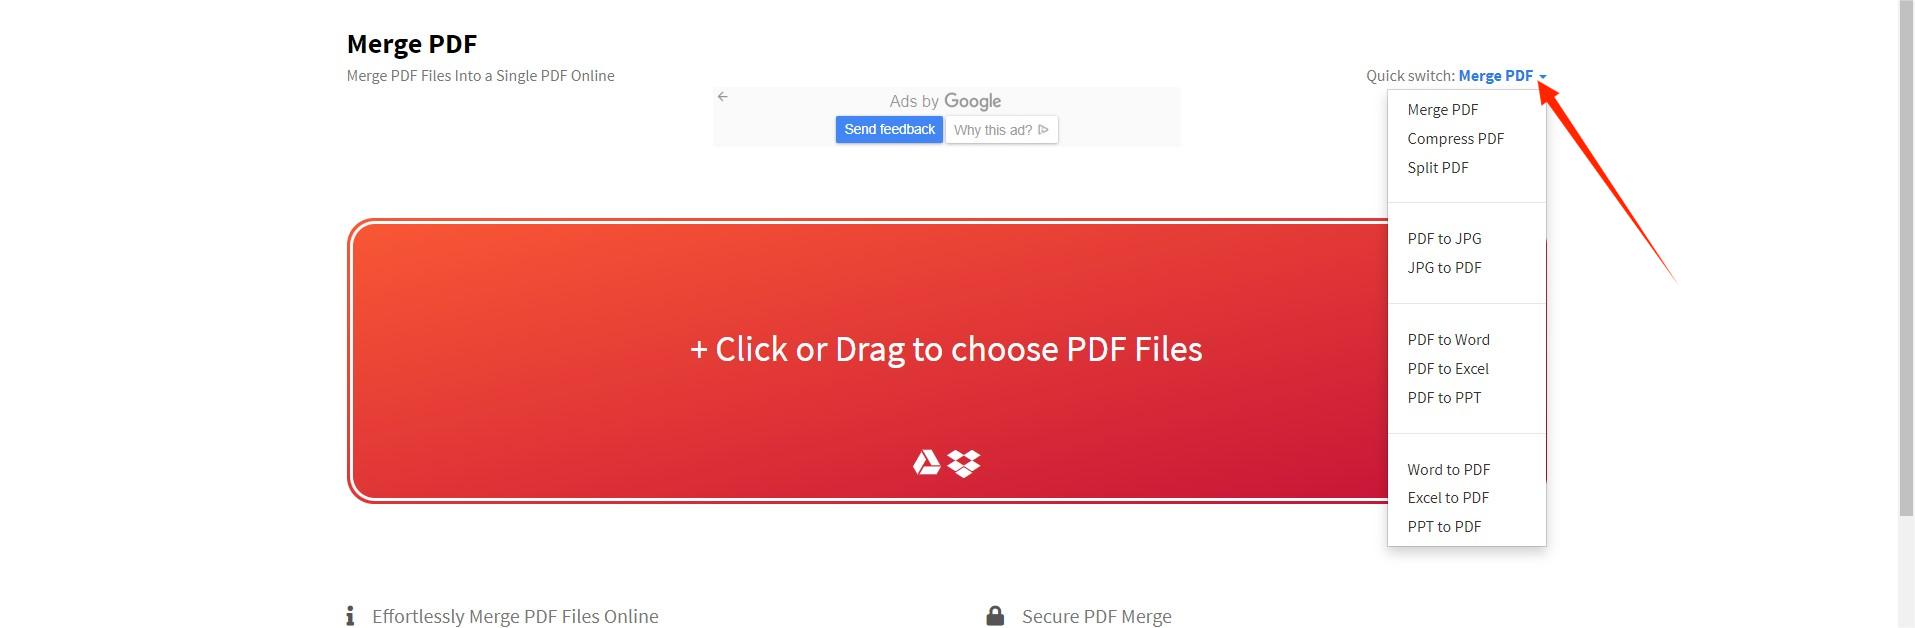 Merge PDF 插件使用教程